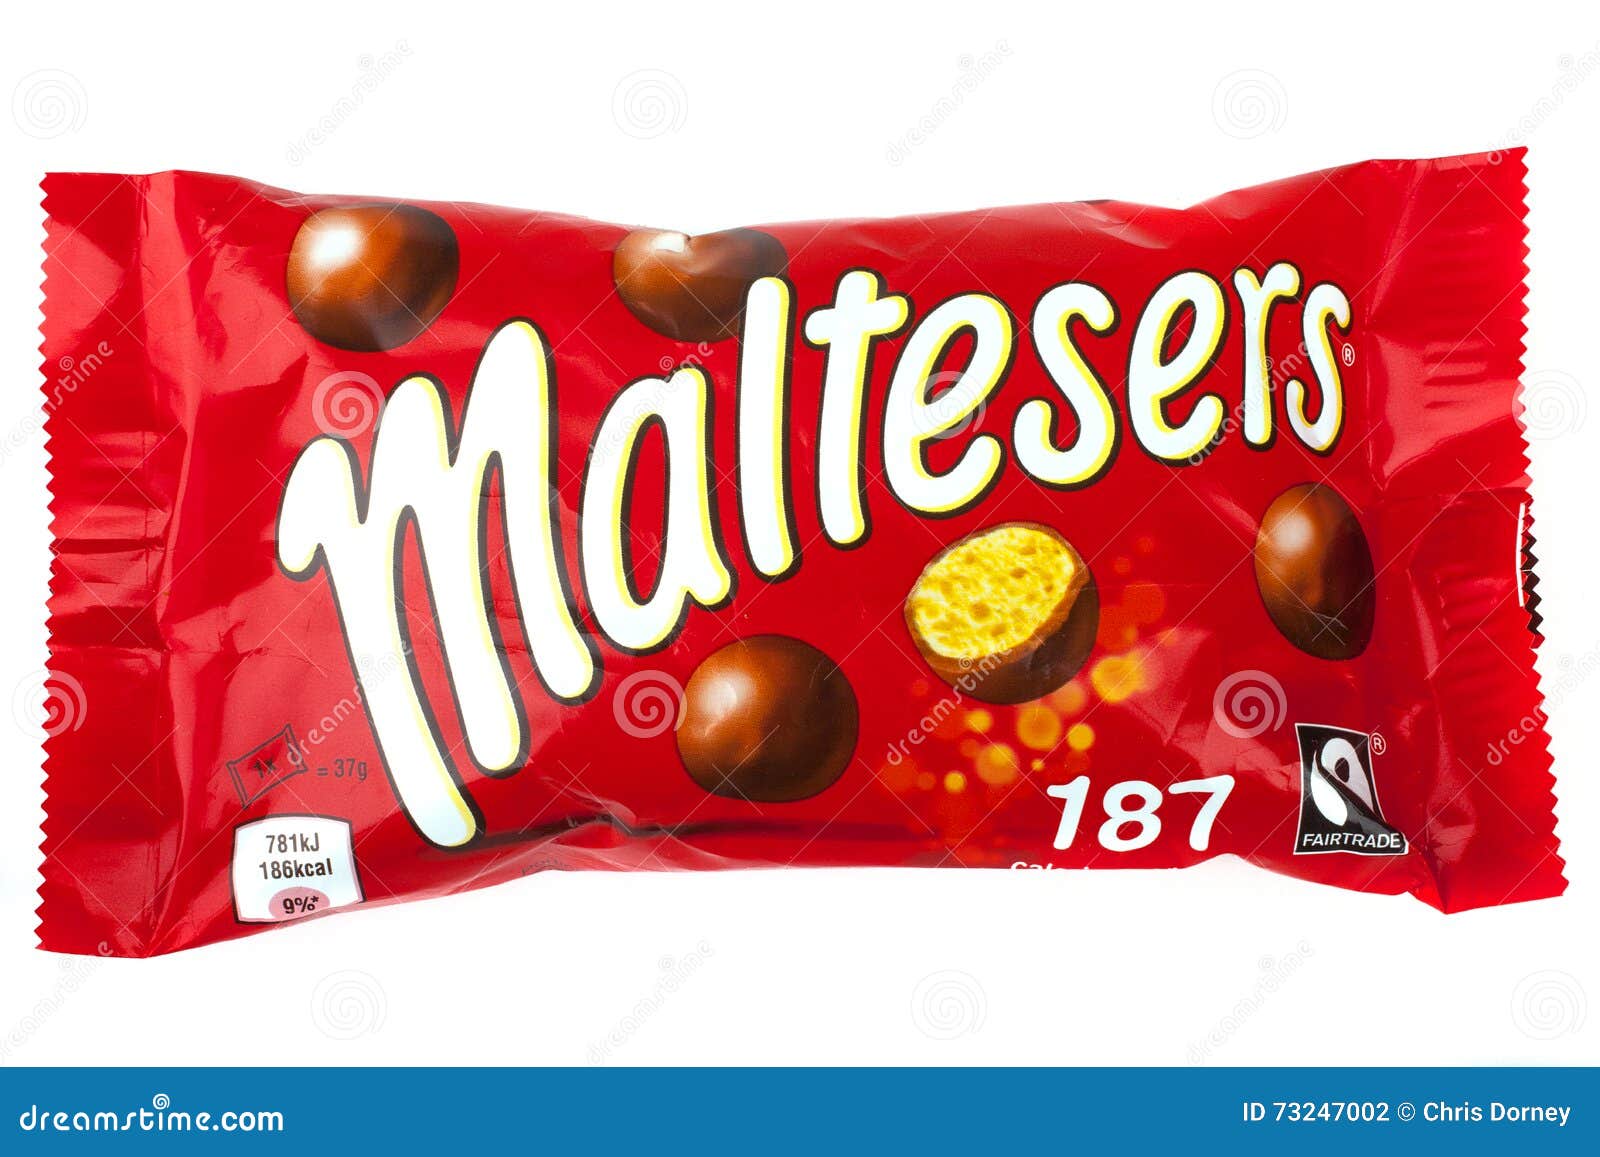 Mars Celebrations - Boîte de bonbons chocolat - 186g